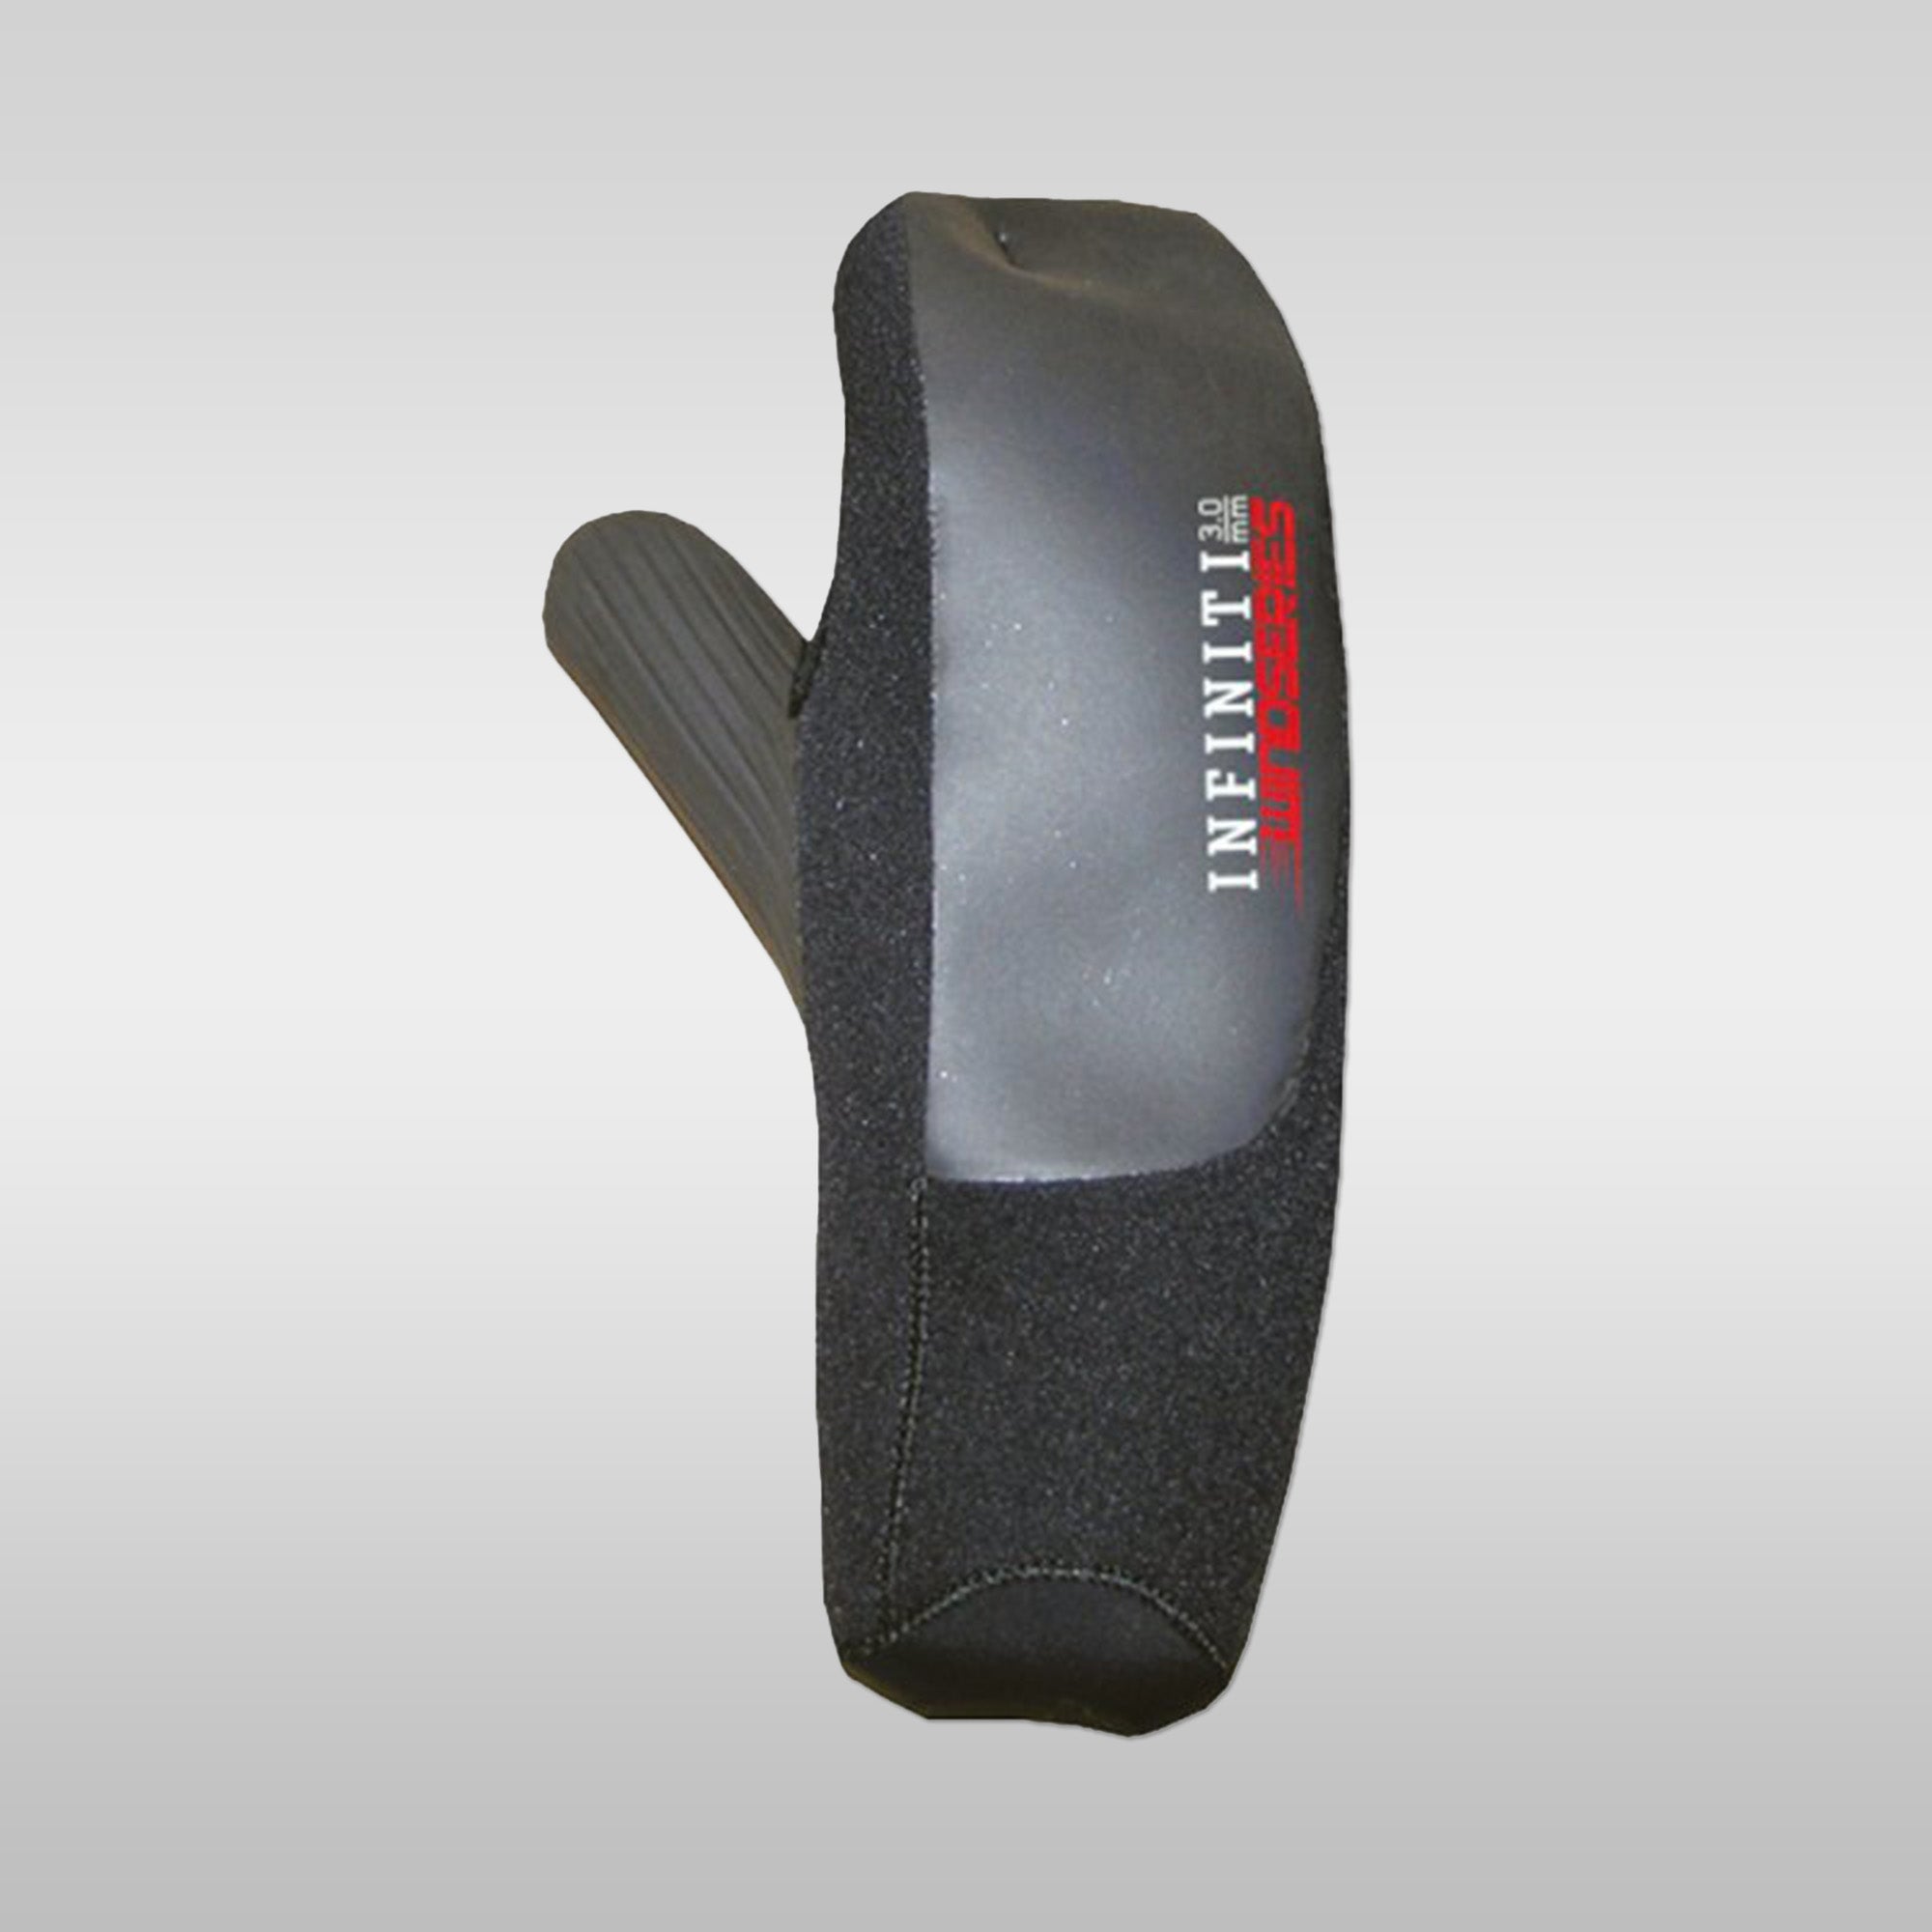 Xcel Glove Open Palm Mitten 3mm 3 mm Xcel 